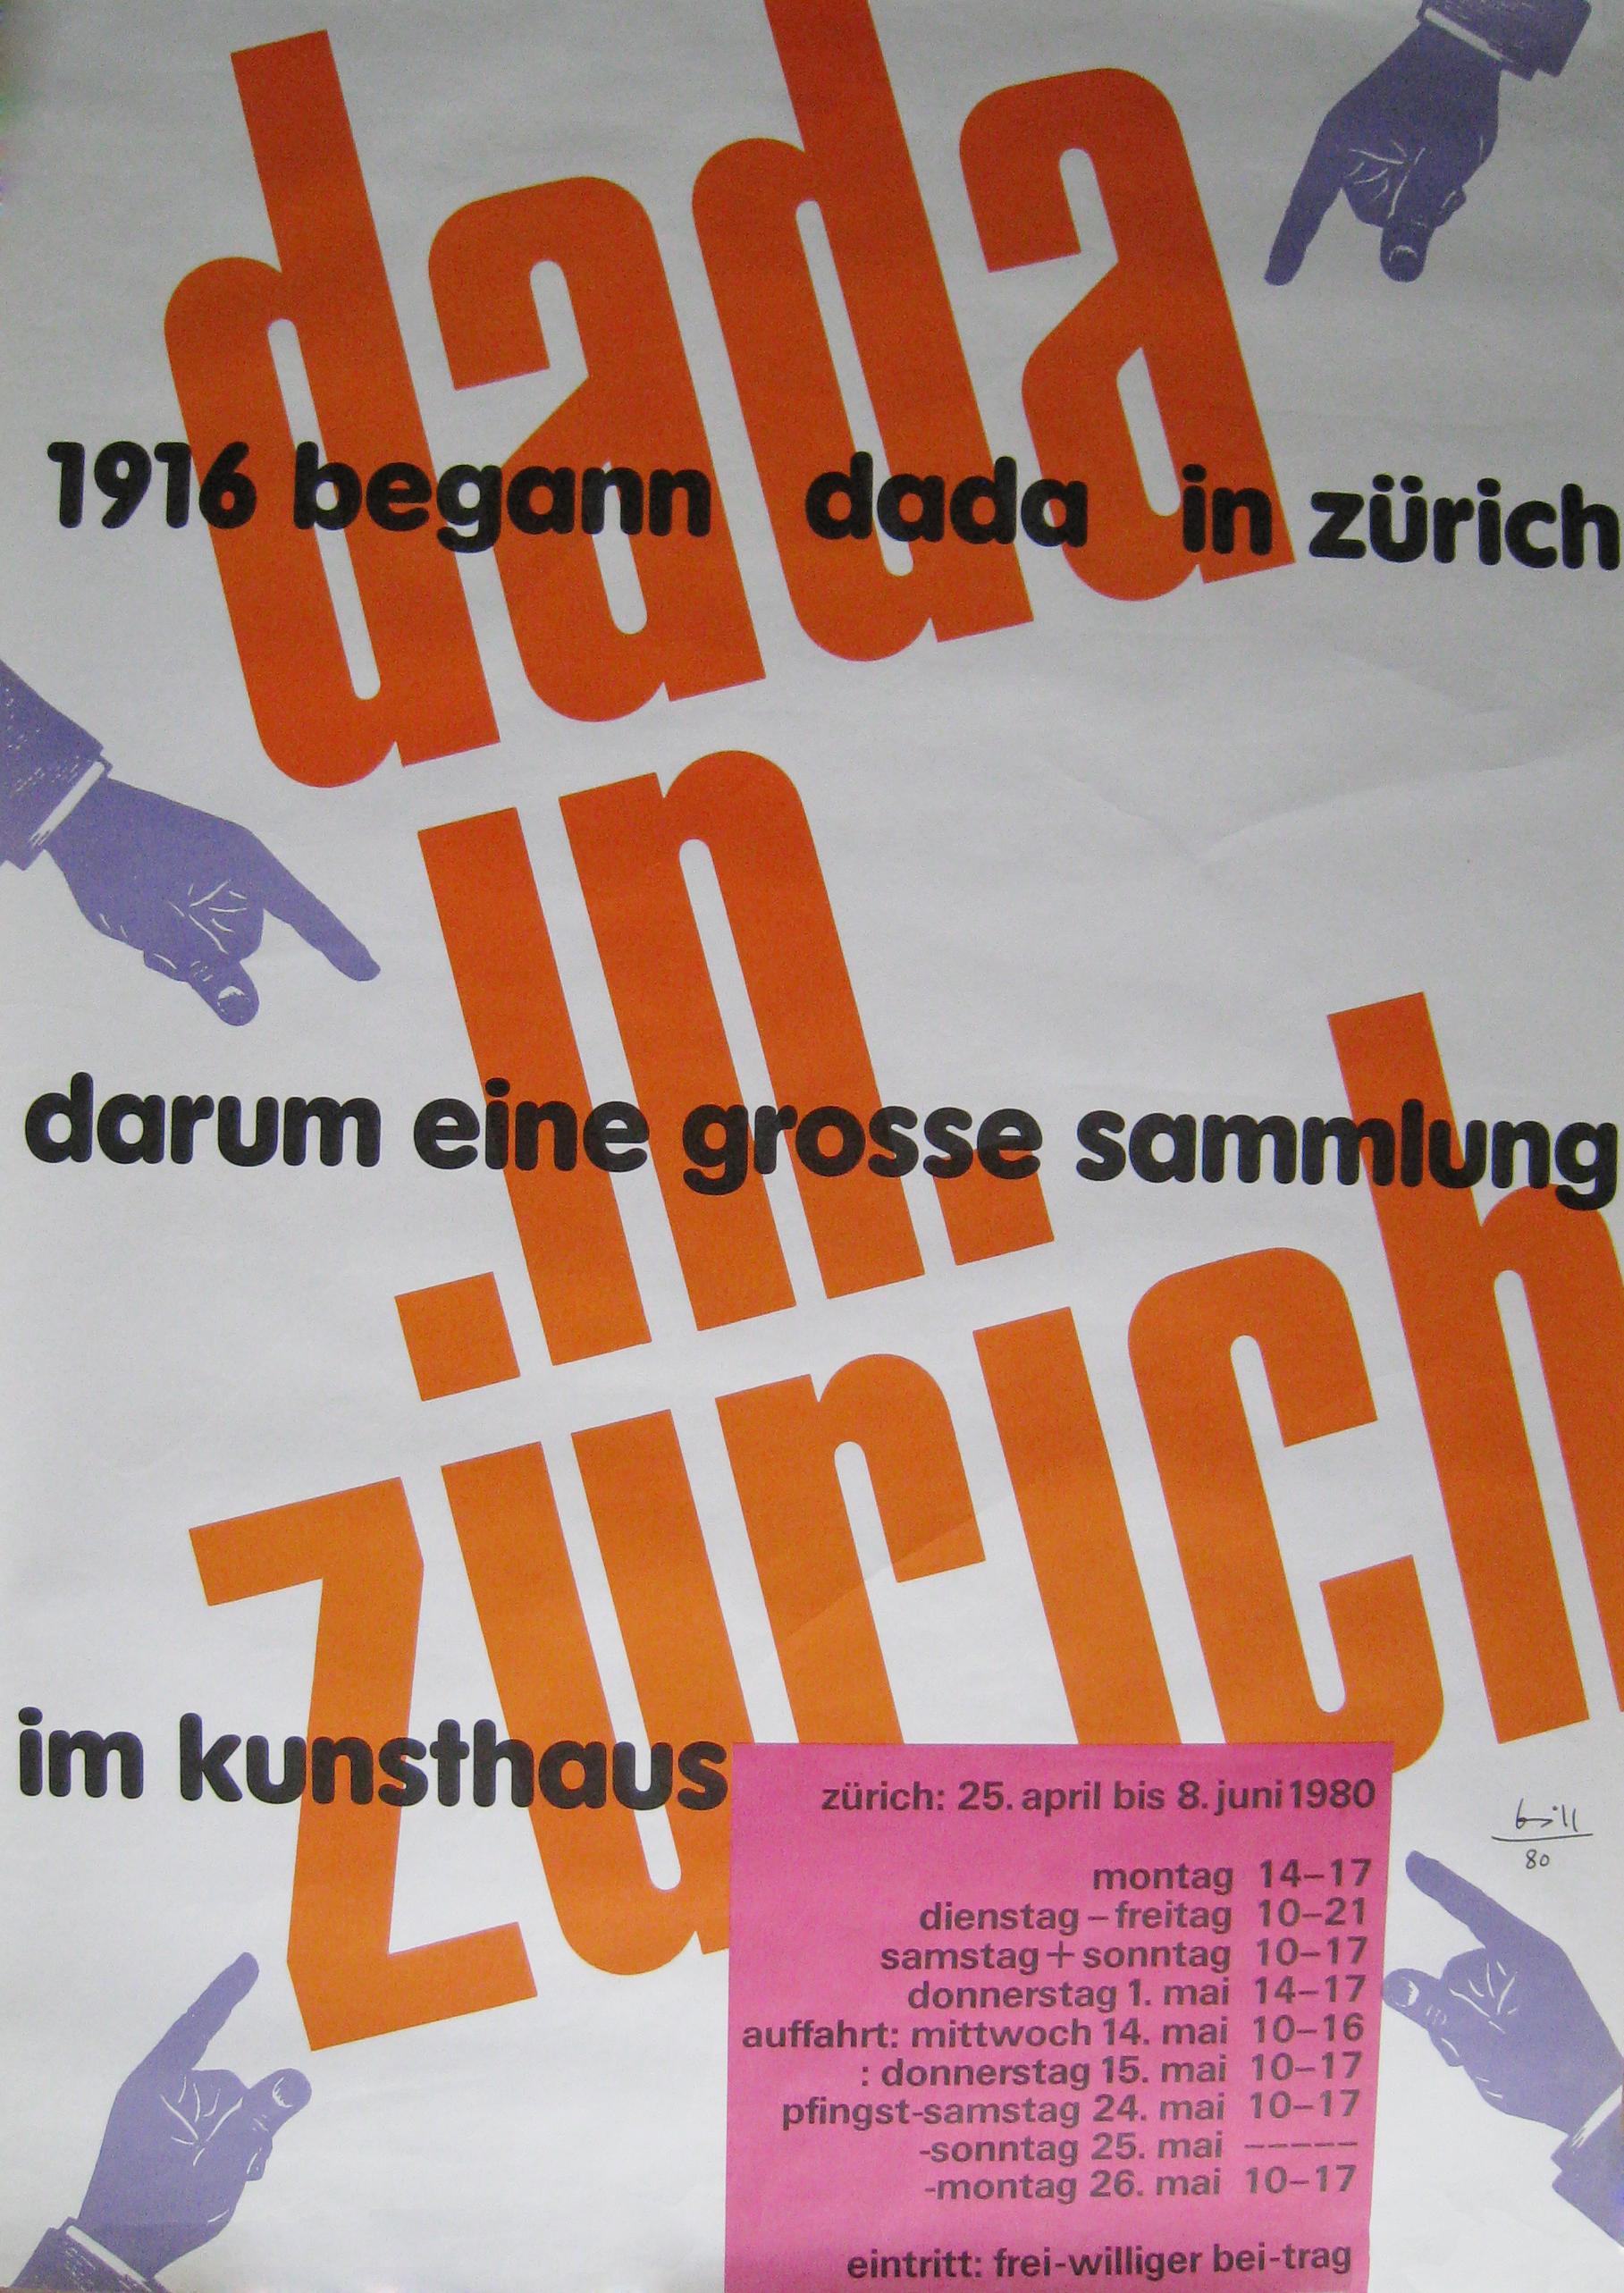 Dada in Zurich